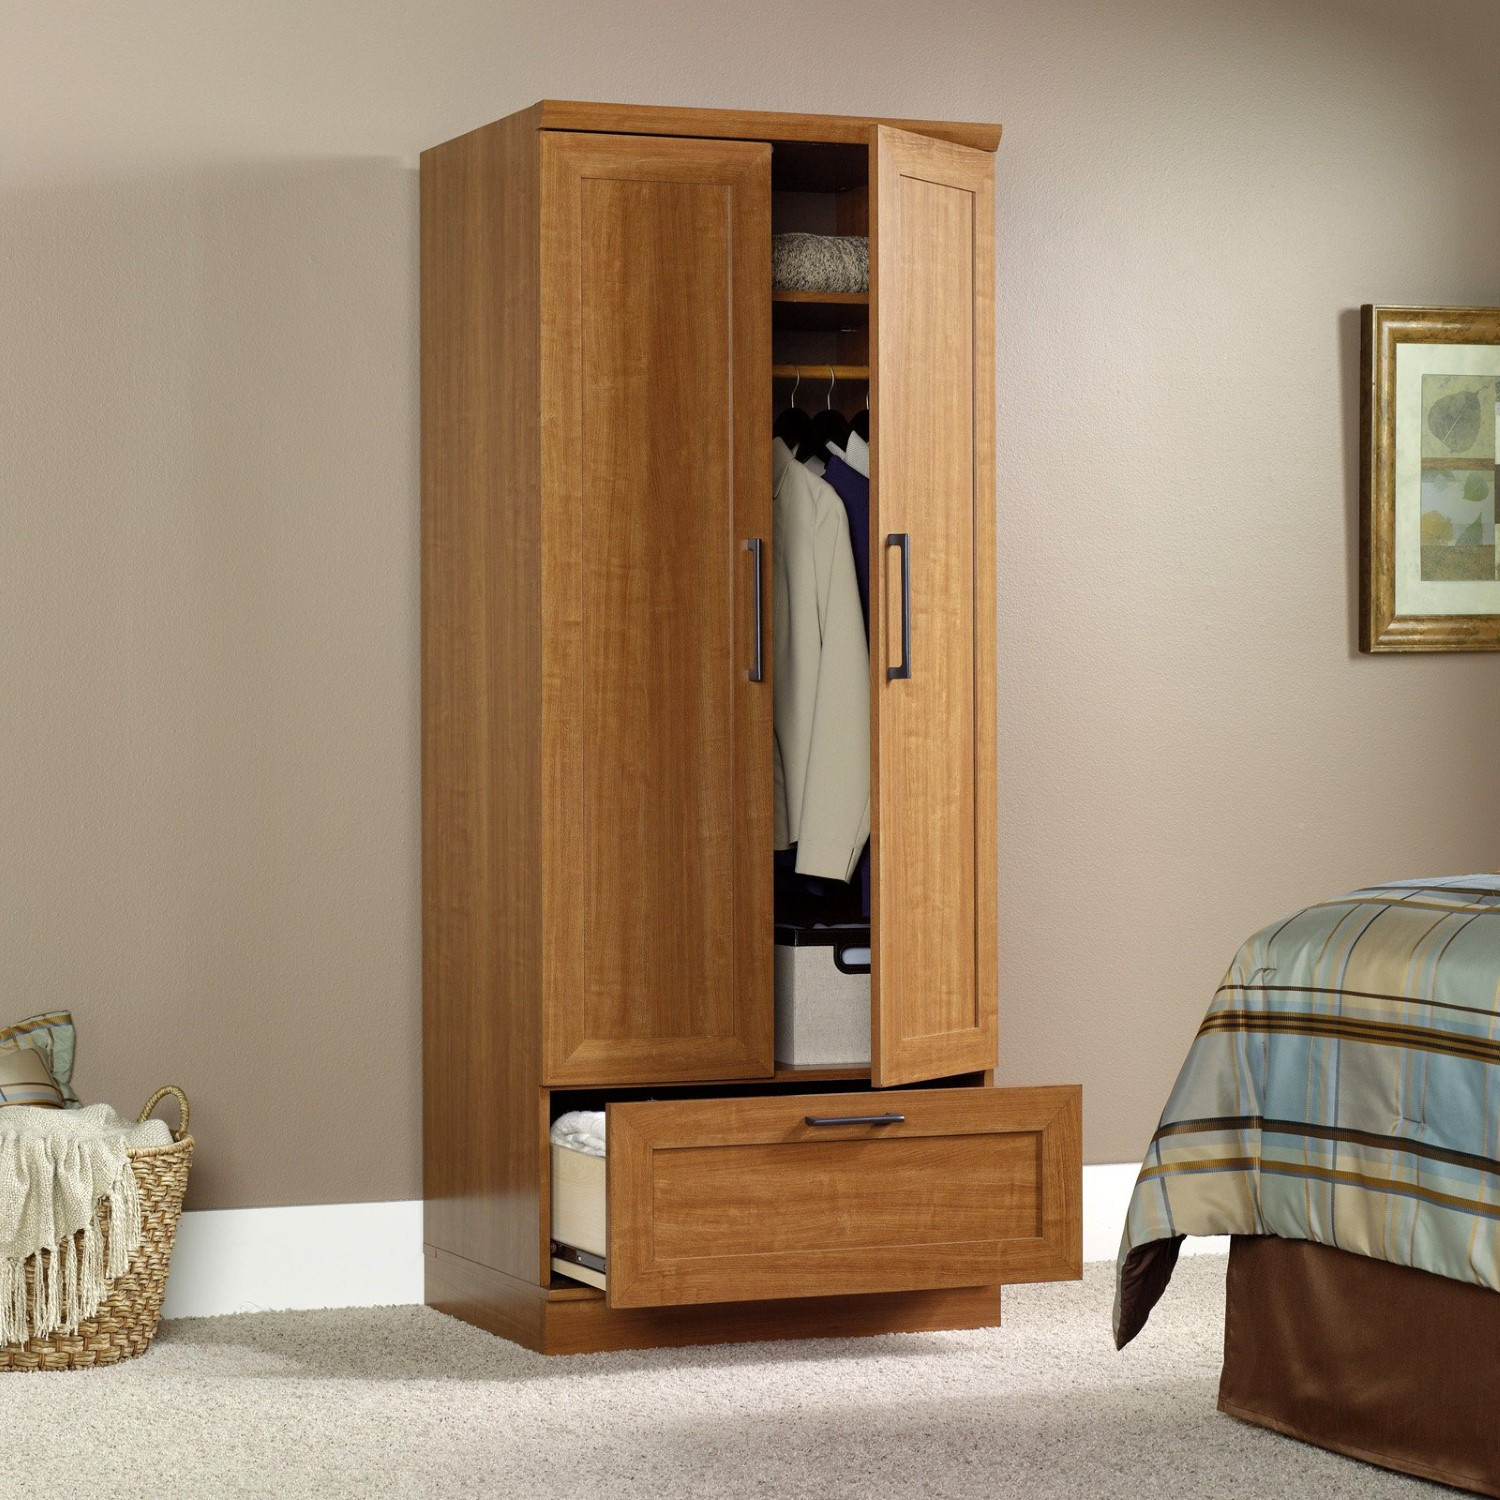 Best ideas about Sauder Homeplus Storage Cabinet
. Save or Pin Sauder Homeplus Wardrobe Cabinet Now.